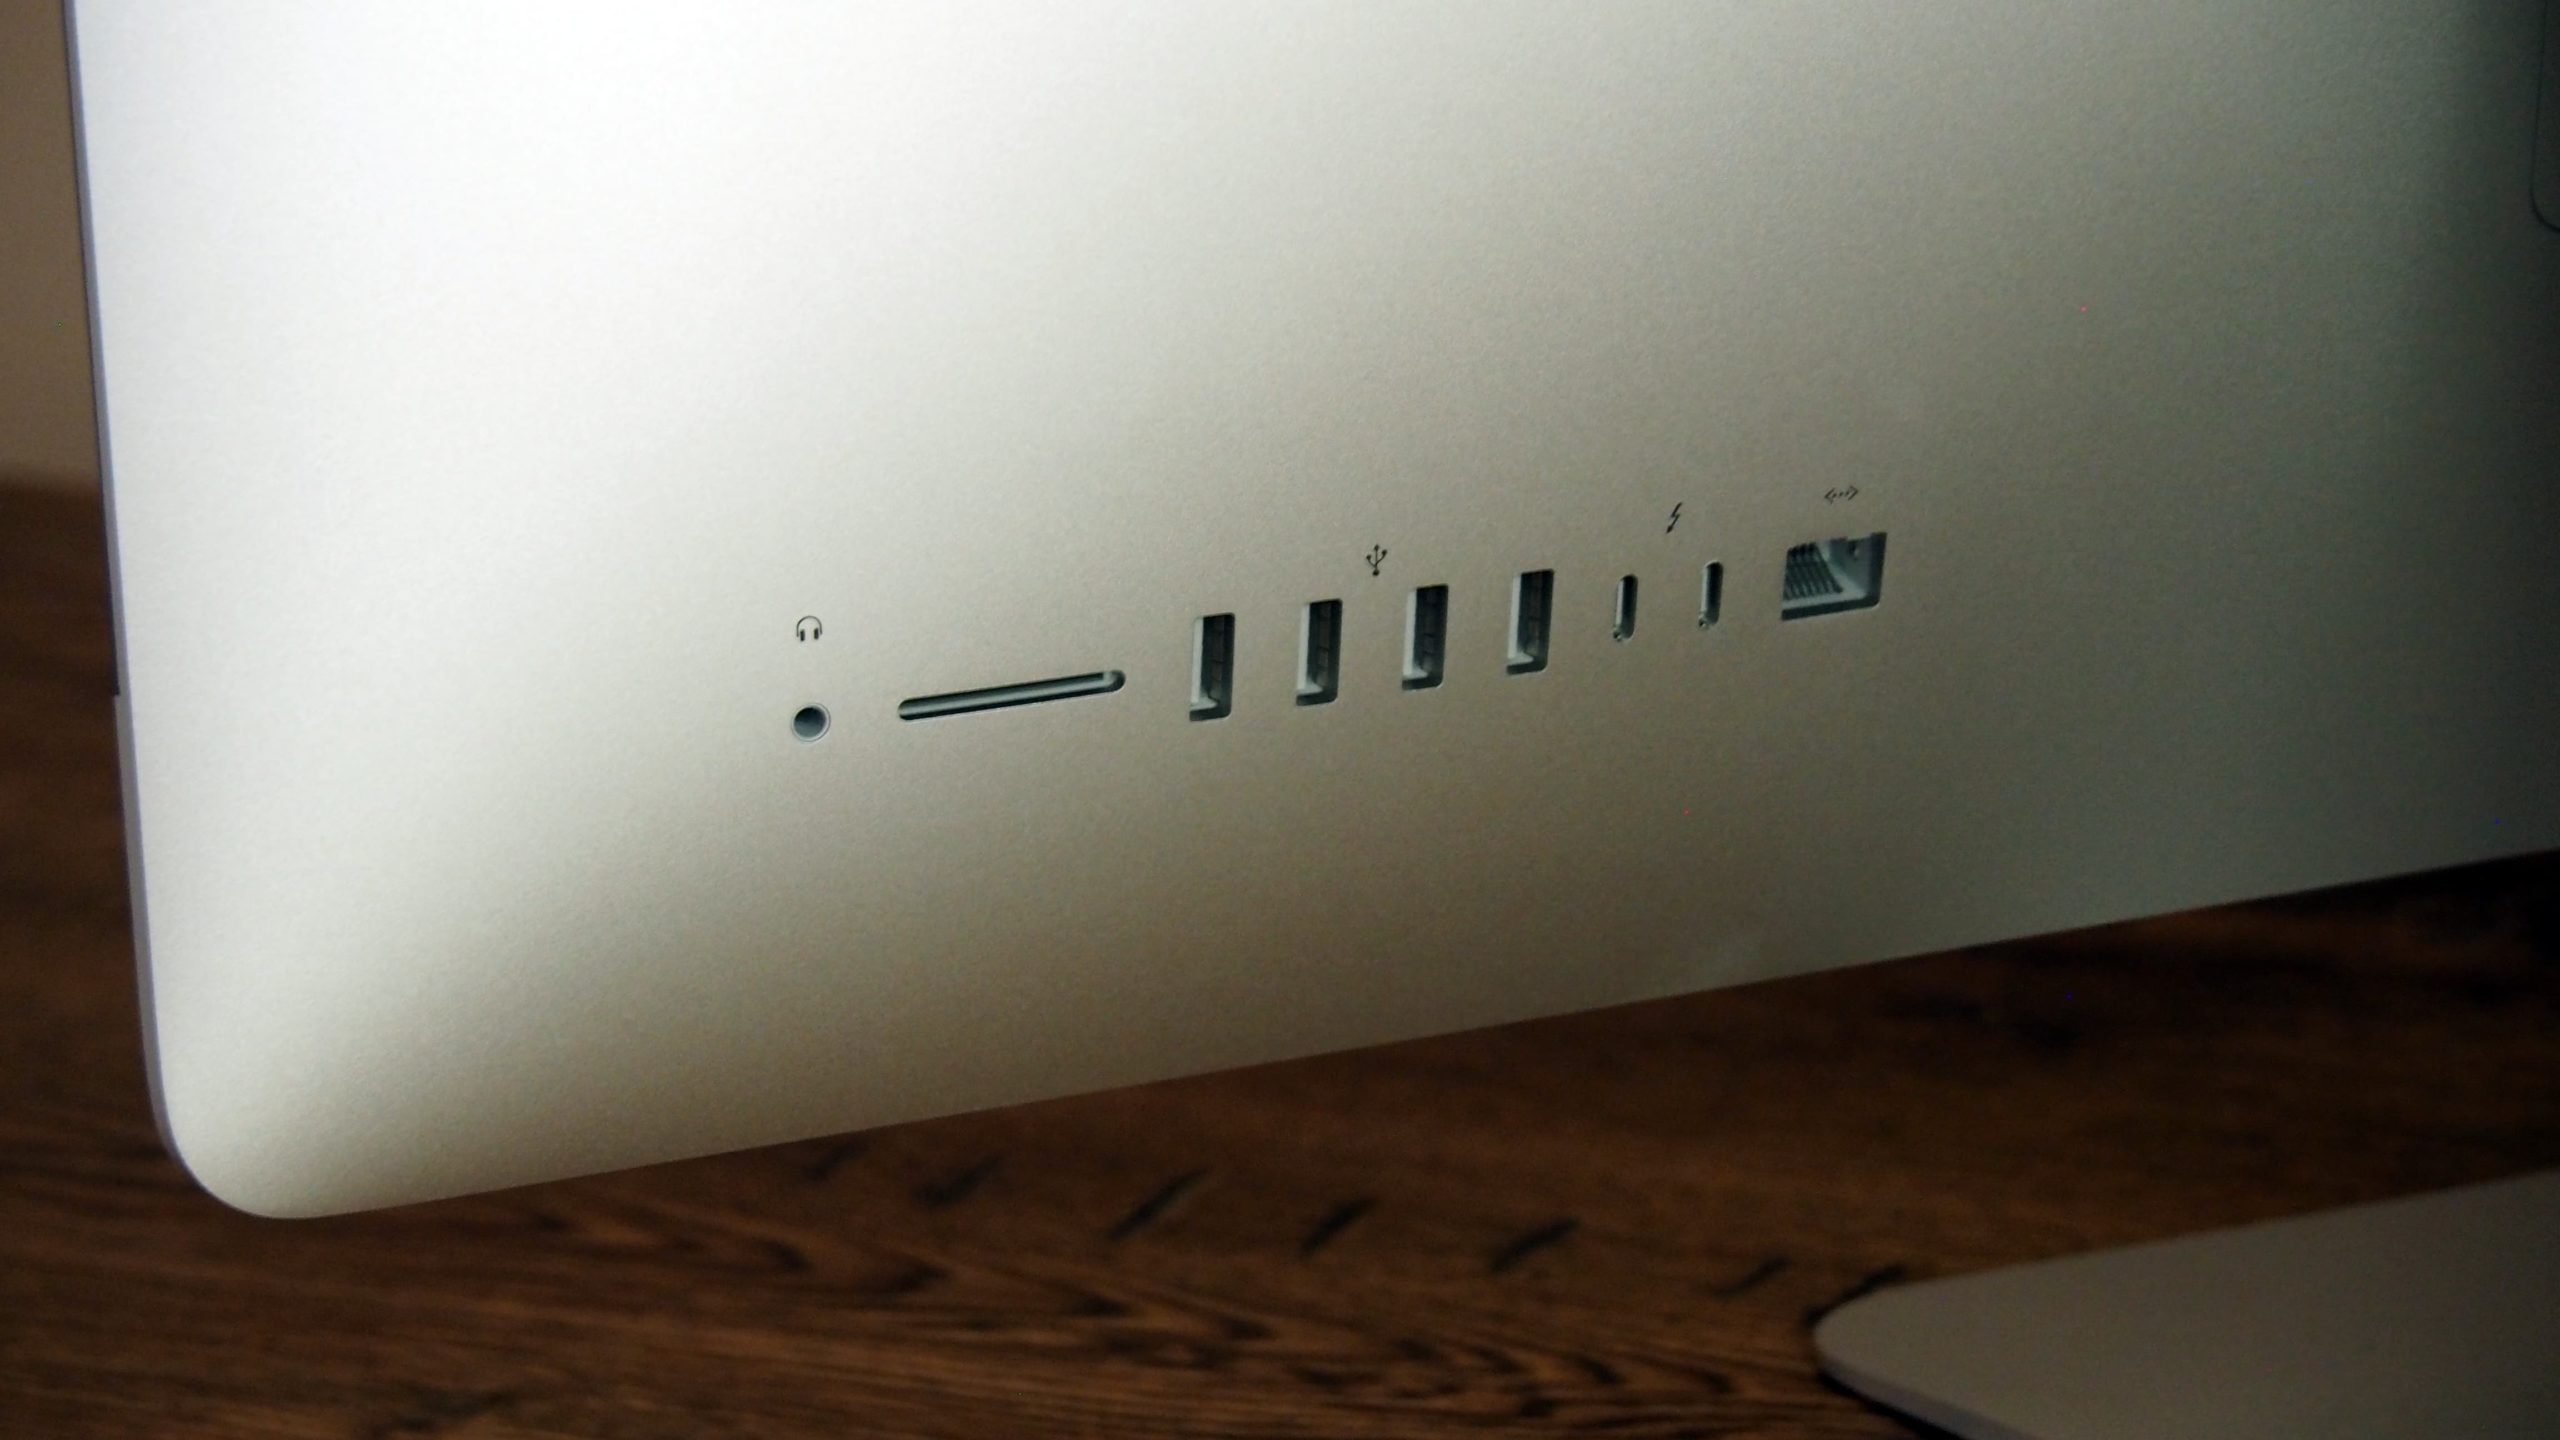 Detalhe das portas do iMac de 27 polegadas. Crédito: Caitlin McGarry/Gizmodo